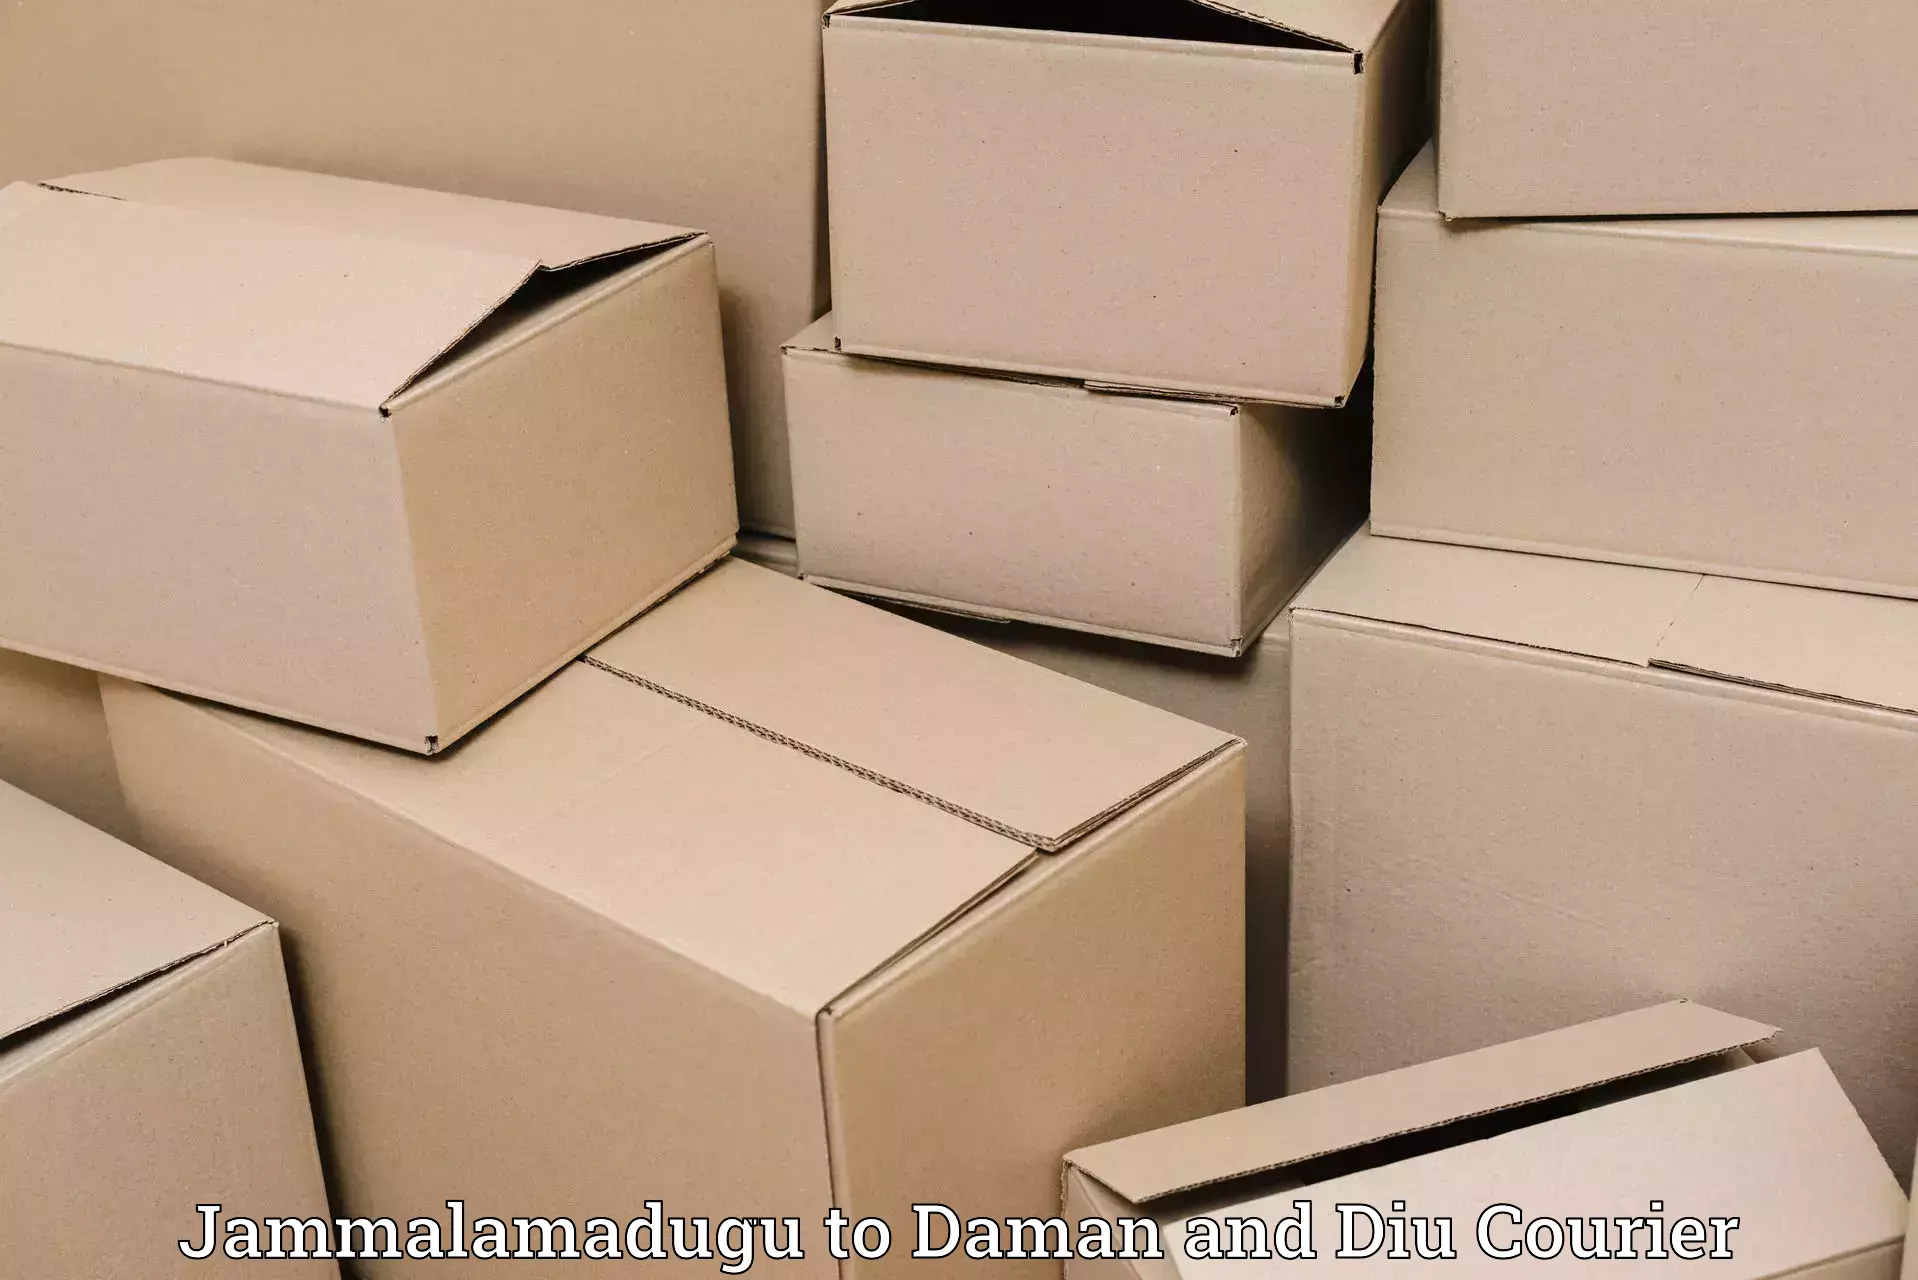 Customer-centric shipping Jammalamadugu to Daman and Diu